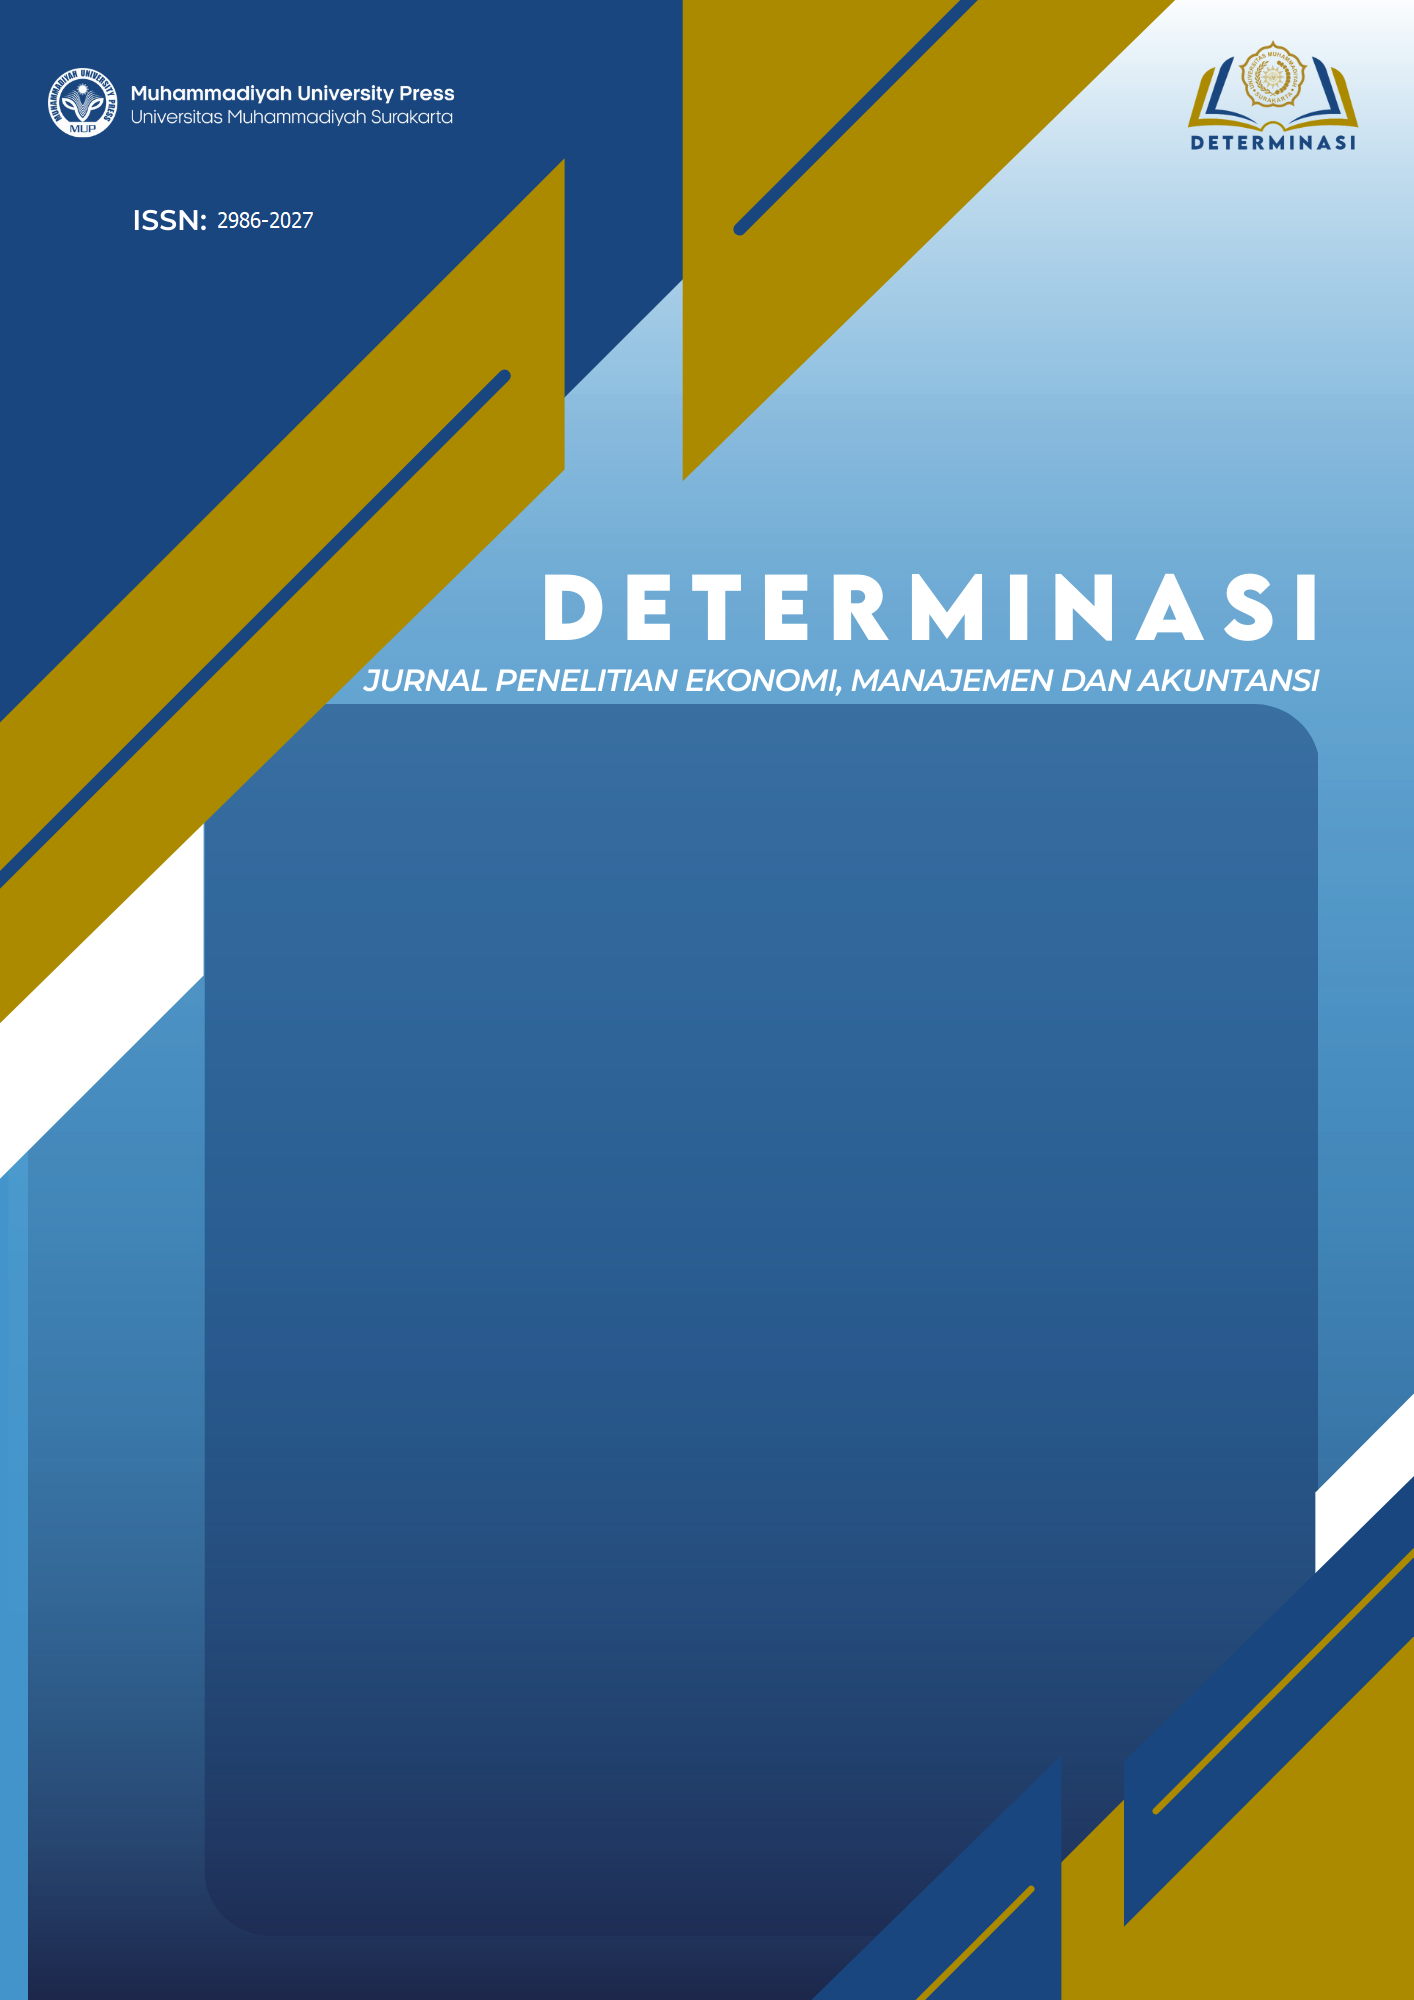 Determinasi: Jurnal Penelitian Ekonomi Manajemen dan Akuntansi